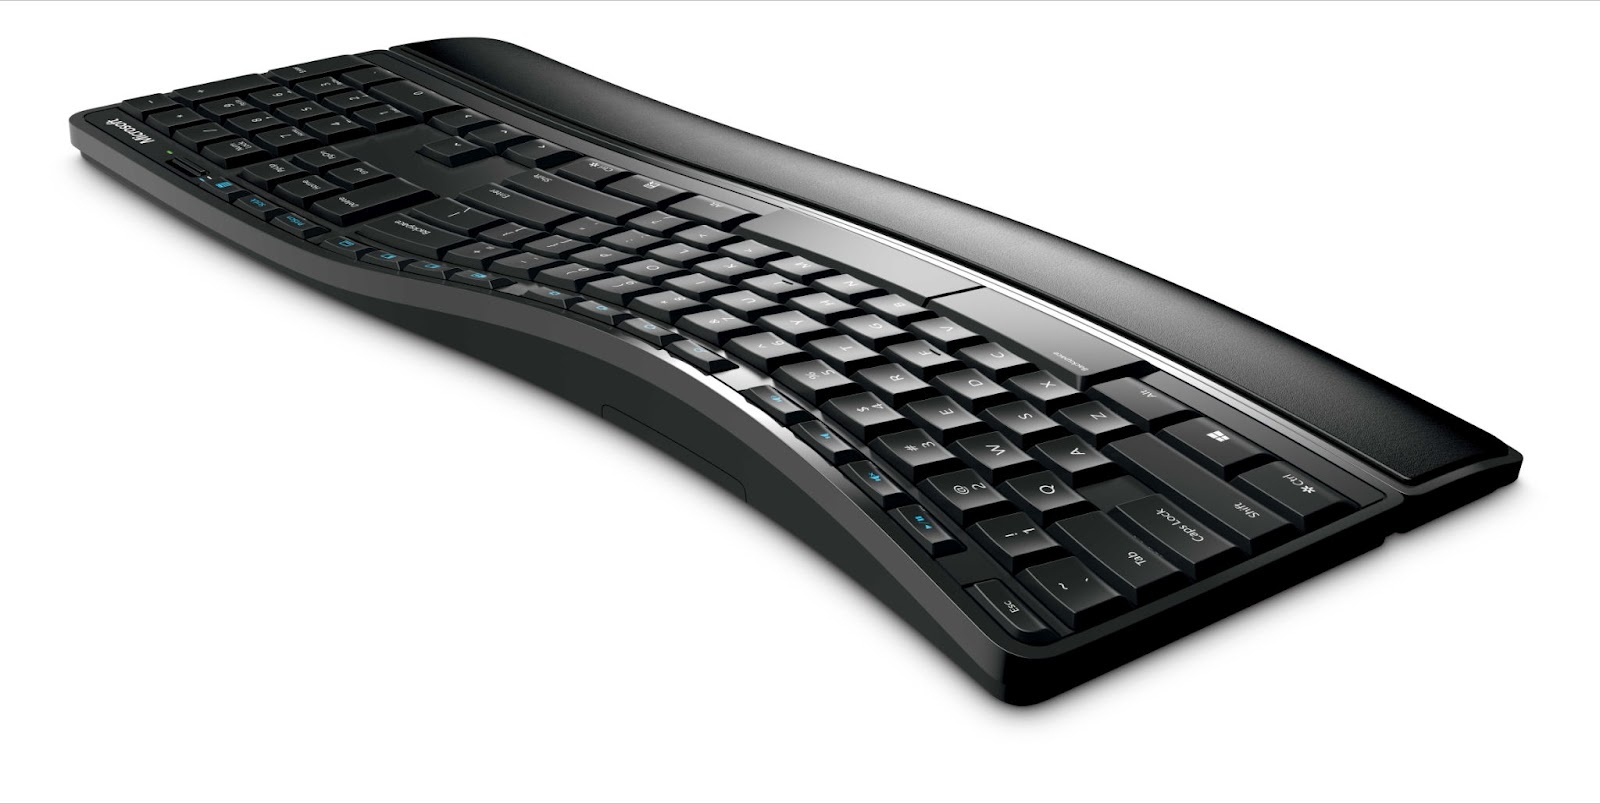 Microsoft, smukła klawiatura w eleganckiej czerni